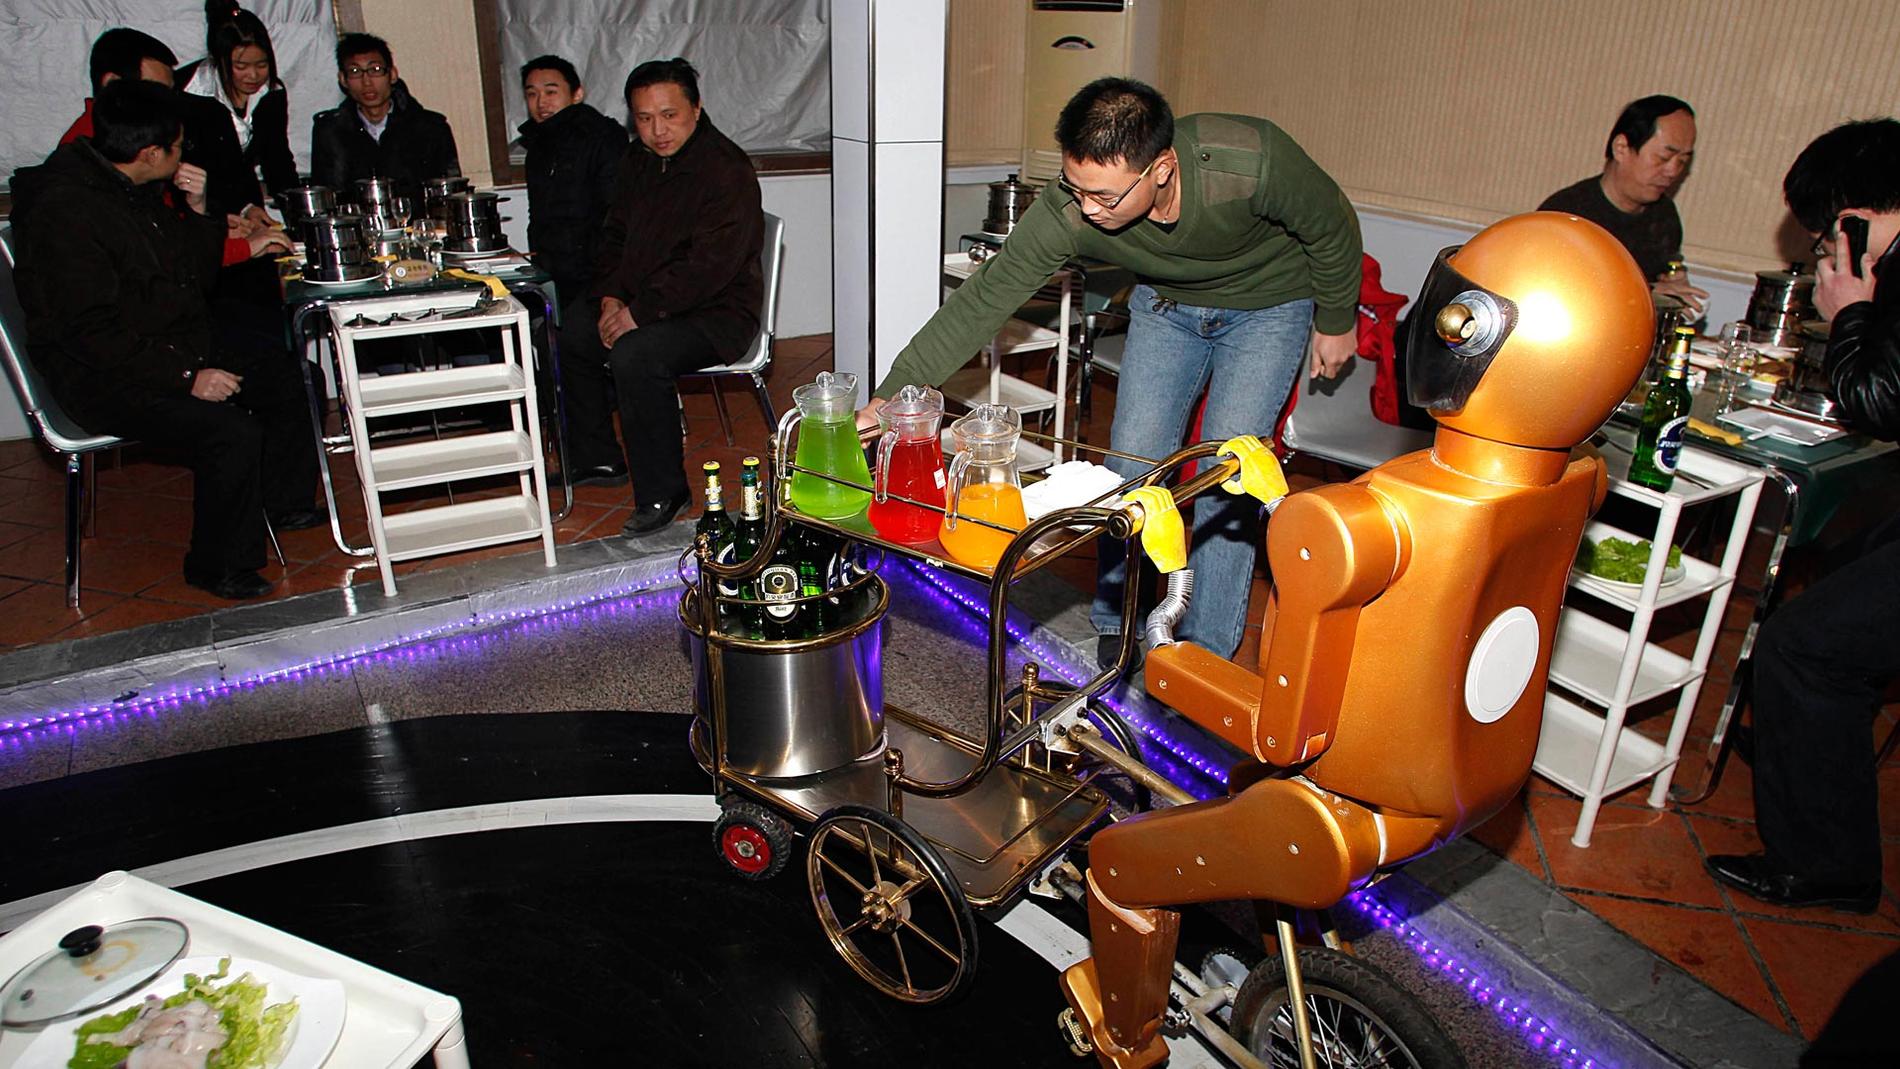 Dalu Robot restaurant I kinesiska staden Jinan ligger denna udda krog, där robotar sköter serveringen. Bättre än människor, sägs det – och du slipper ge dricks. Läs artikel om robot-restaurangen